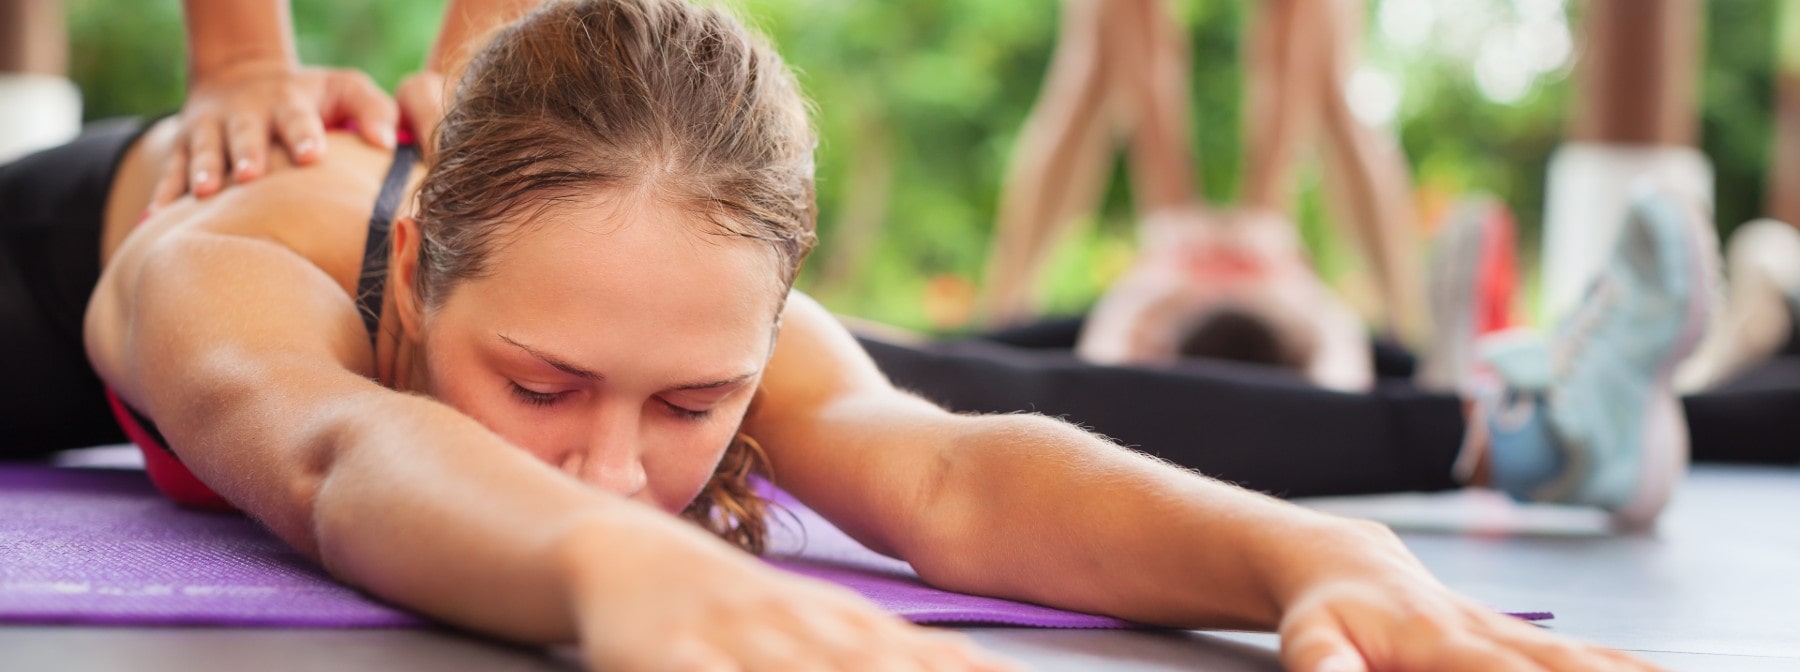 Exerciții de stretching PNF | Îmbunătățește antrenamentele prin facilitarea neuromusculară proprioceptivă